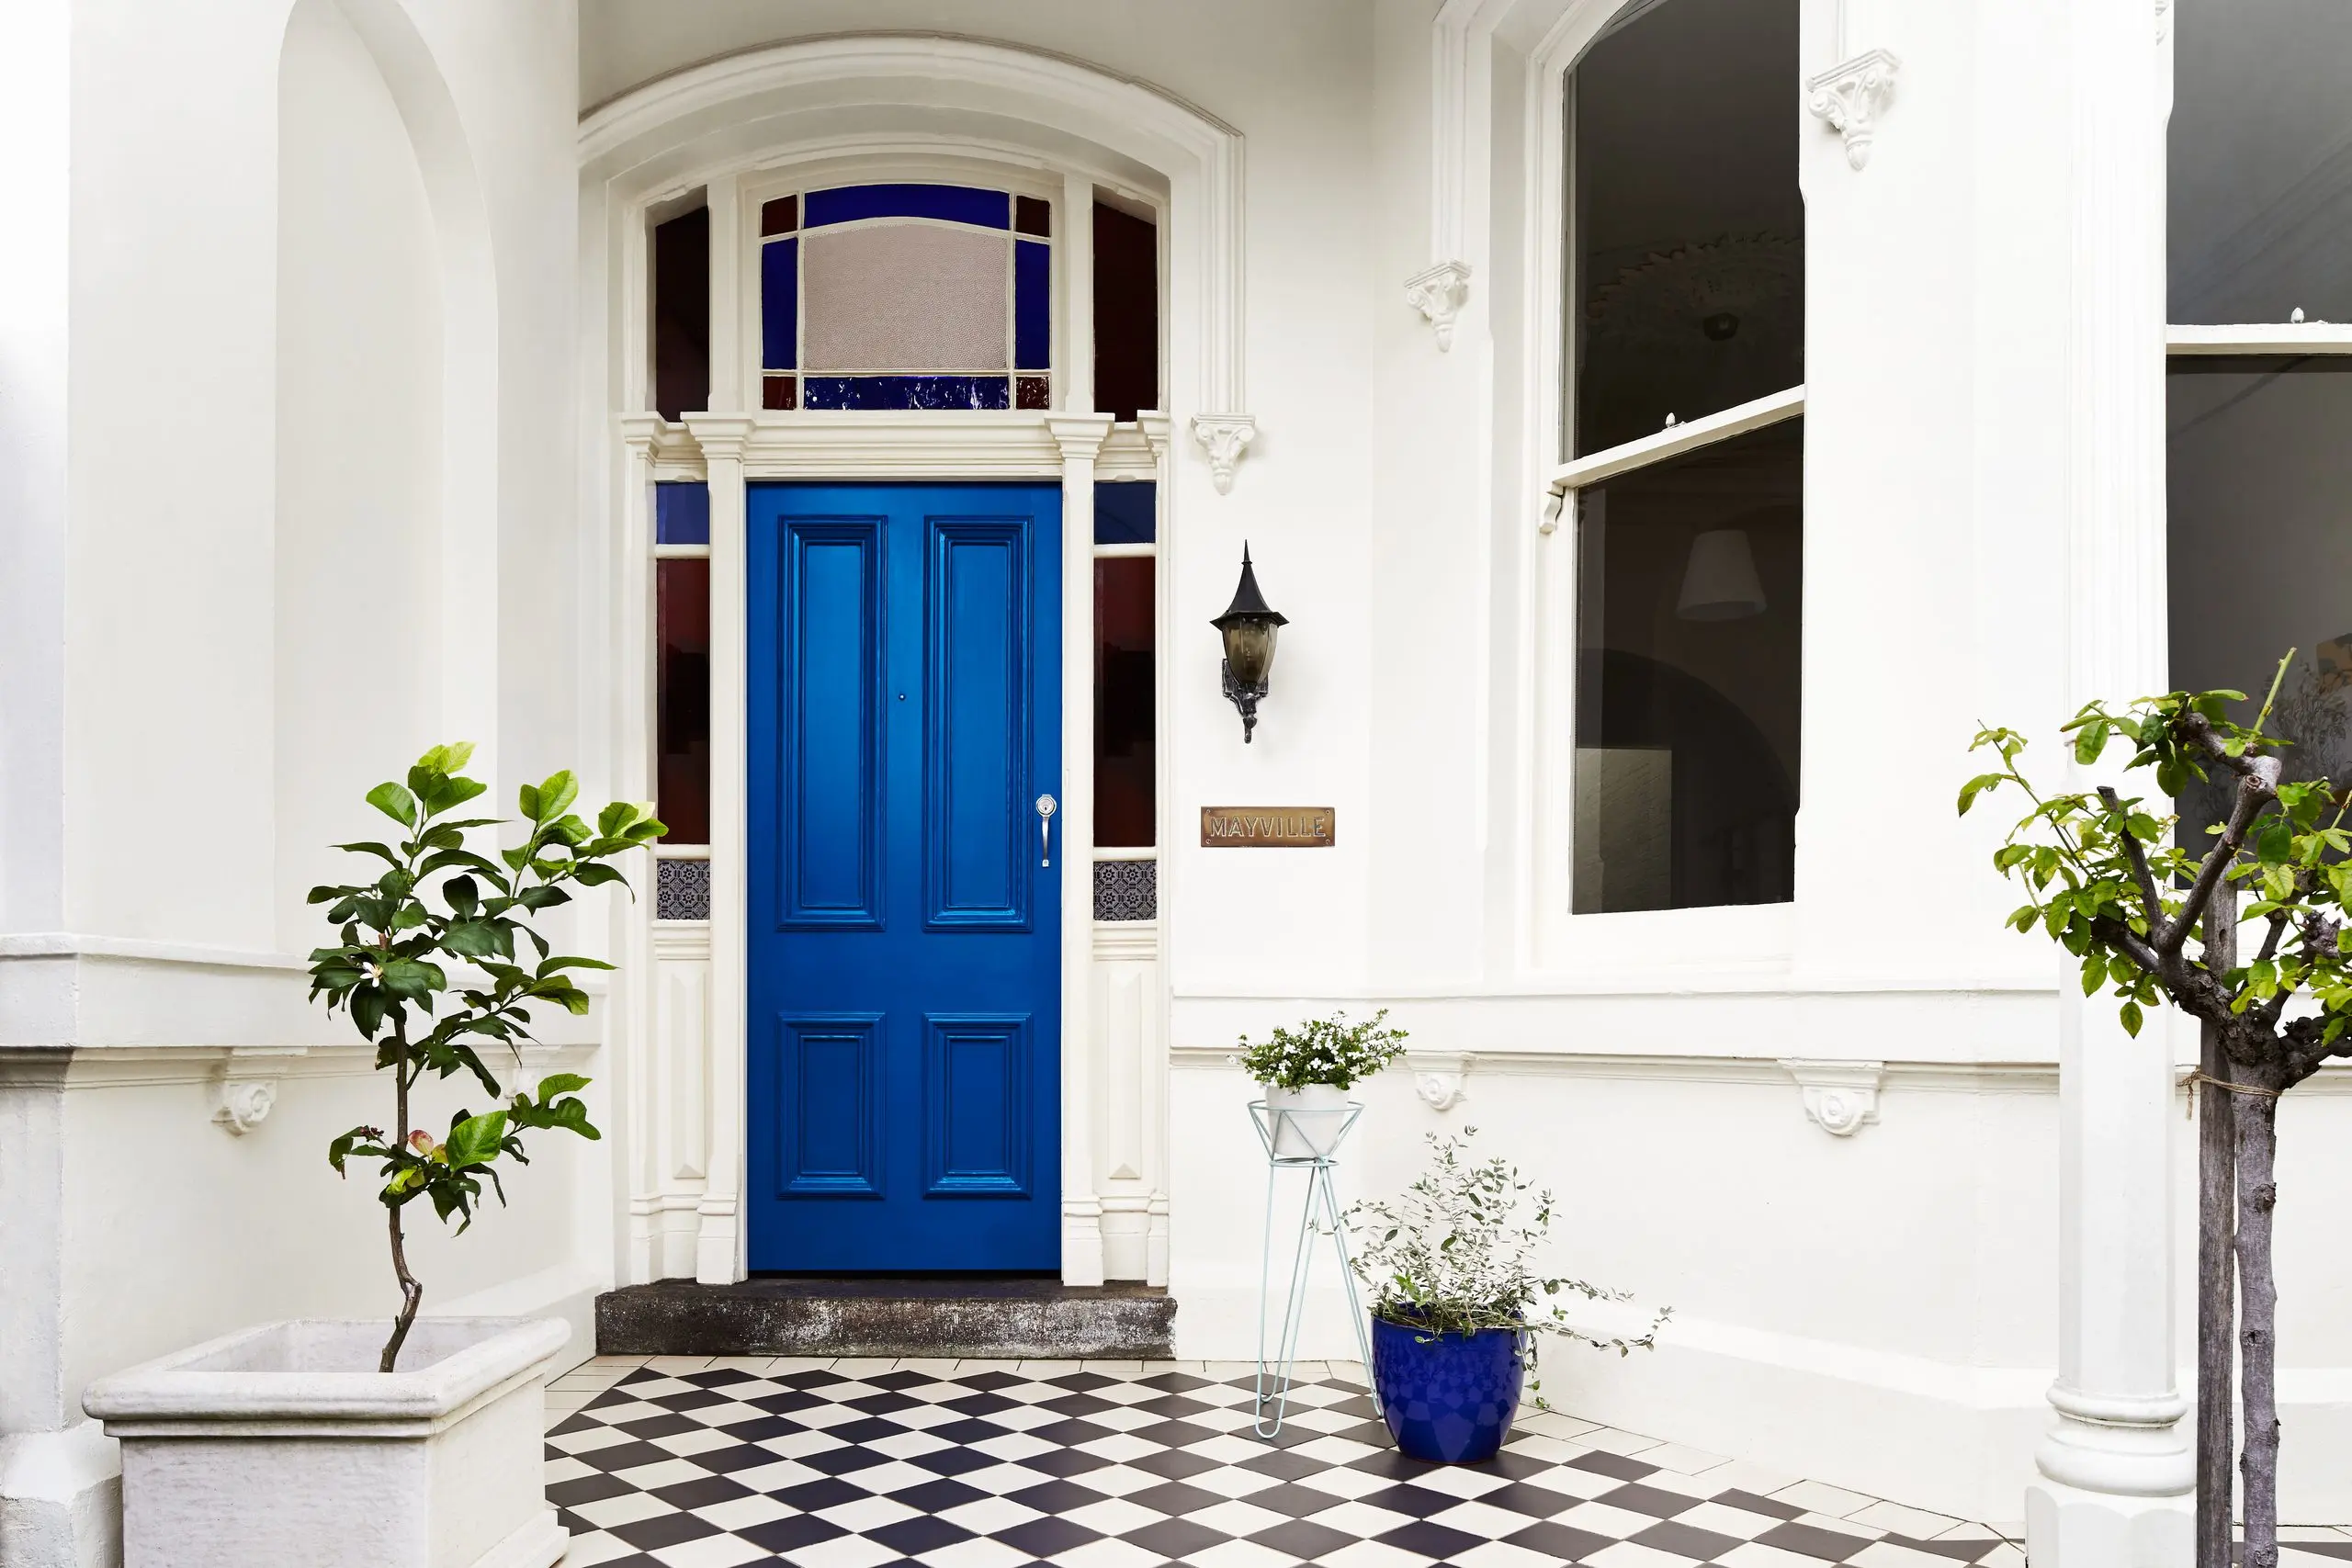 How to paint your front door